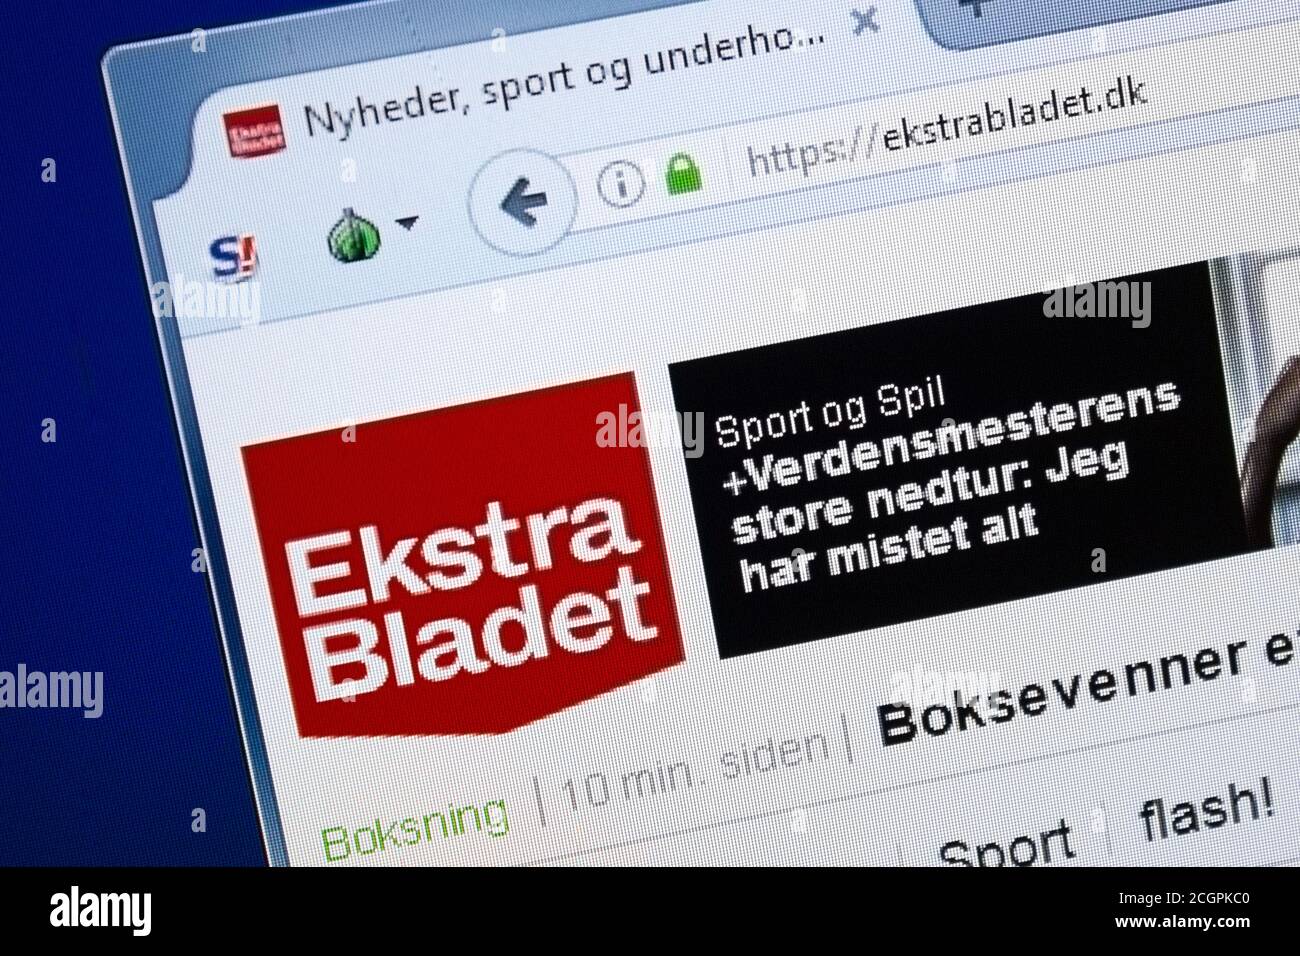 Ekstrabladet Category:Ekstra Bladet